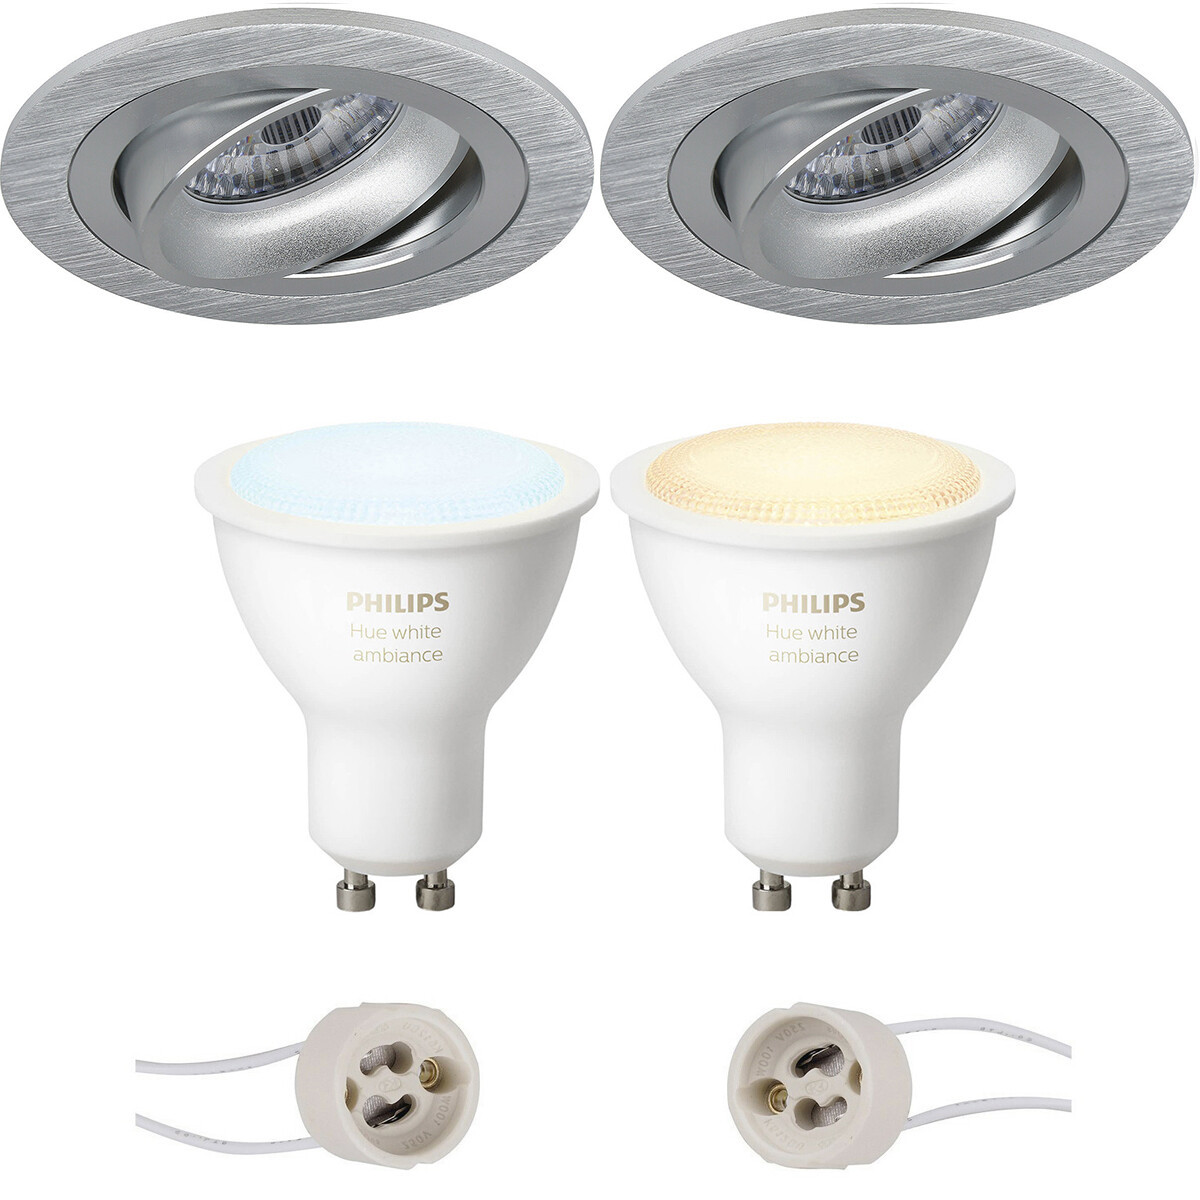 Pragmi Alpin Pro - Inbouw Rond - Mat Zilver - Kantelbaar Ø92mm - Philips Hue - LED Spot Set GU10 - White Ambiance - Bluetooth